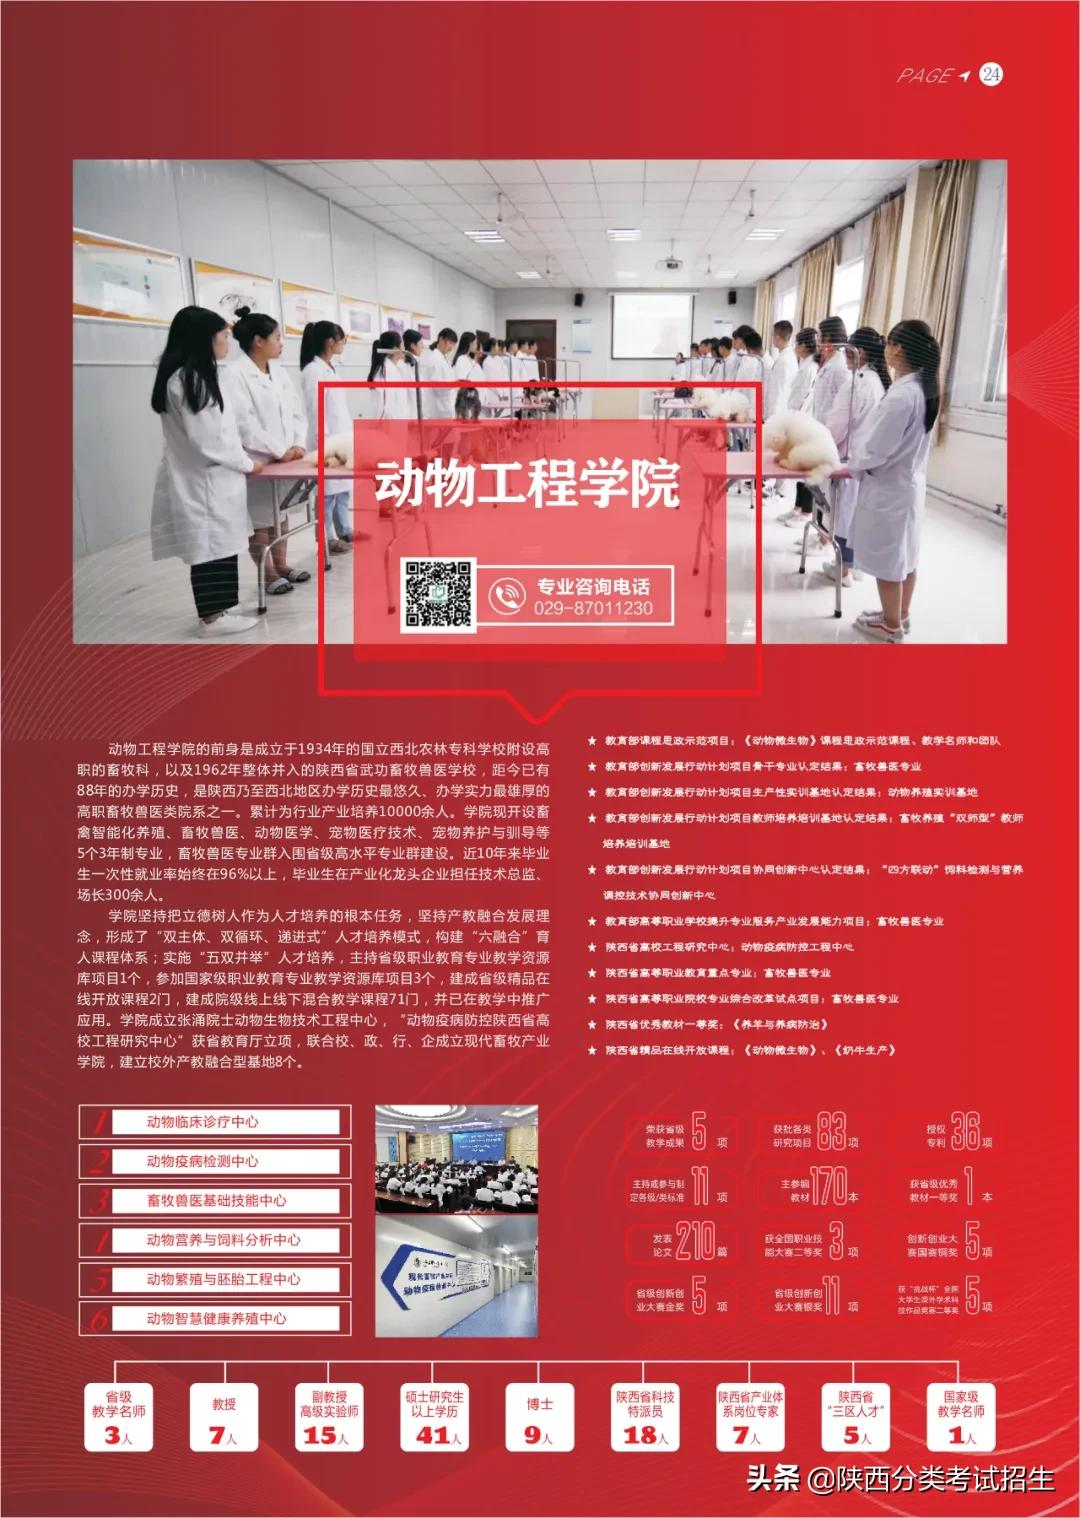 「招生简章」杨凌职业技术学院2022年单独考试招生简章